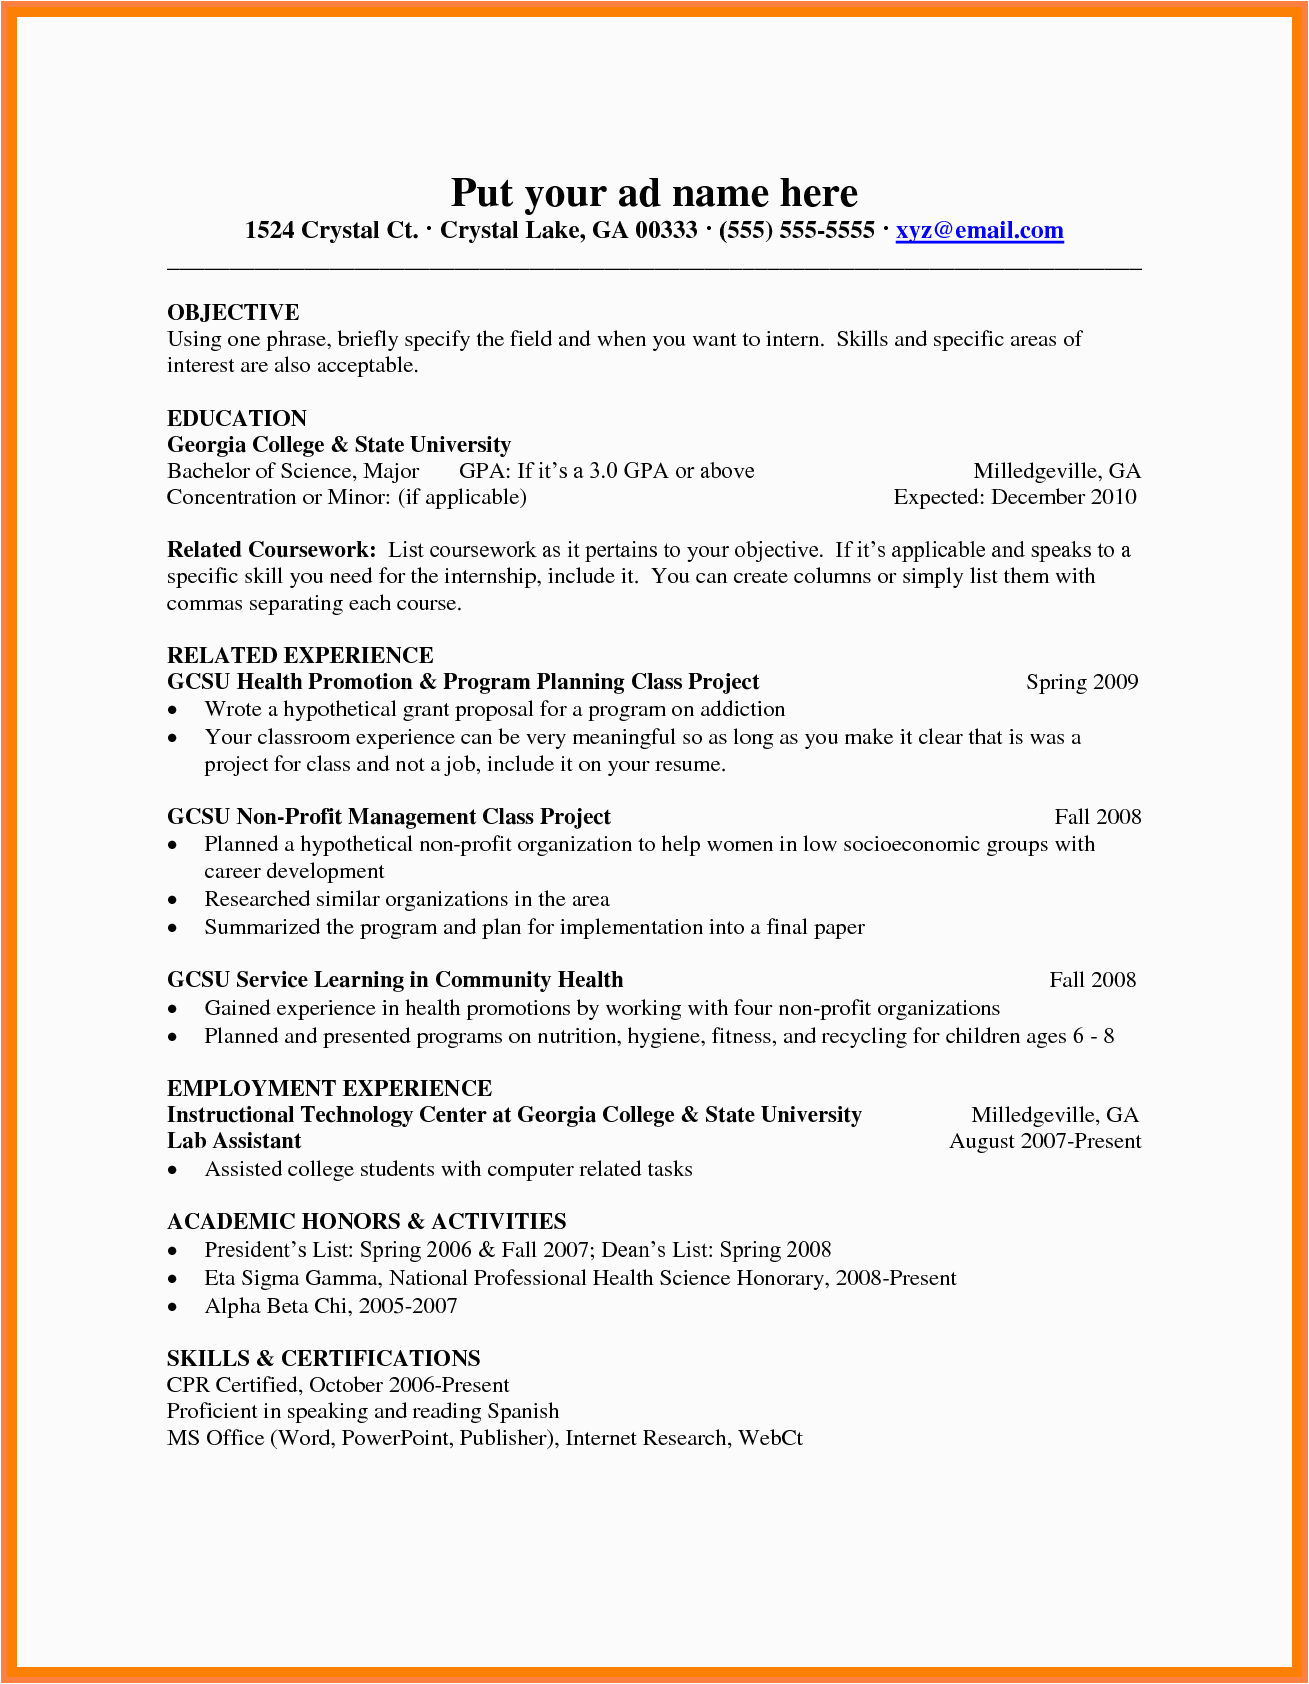 Sample Resume for Preschool Teacher Fresher Cv format Resume for Teaching Job Fresher Best Resume